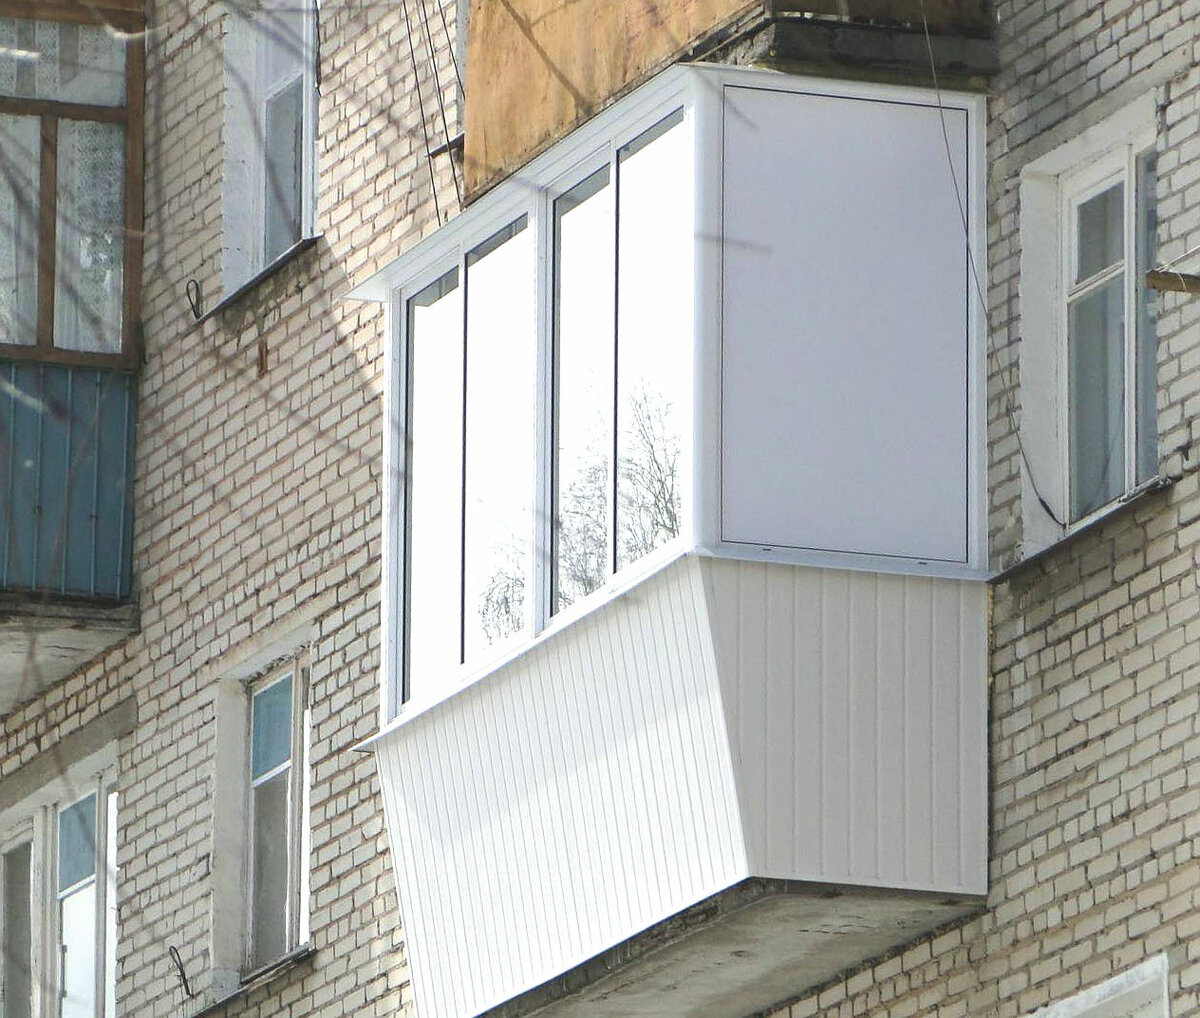 Остекление балкона. Что можно и нельзя в 2022 году остекление, балкона, балконы, работы, собственники, тротуар, жилья, имеют, когда, также, может, стеклить, более, запрещено, балкон, изменение, несколько, собой, проект, законно